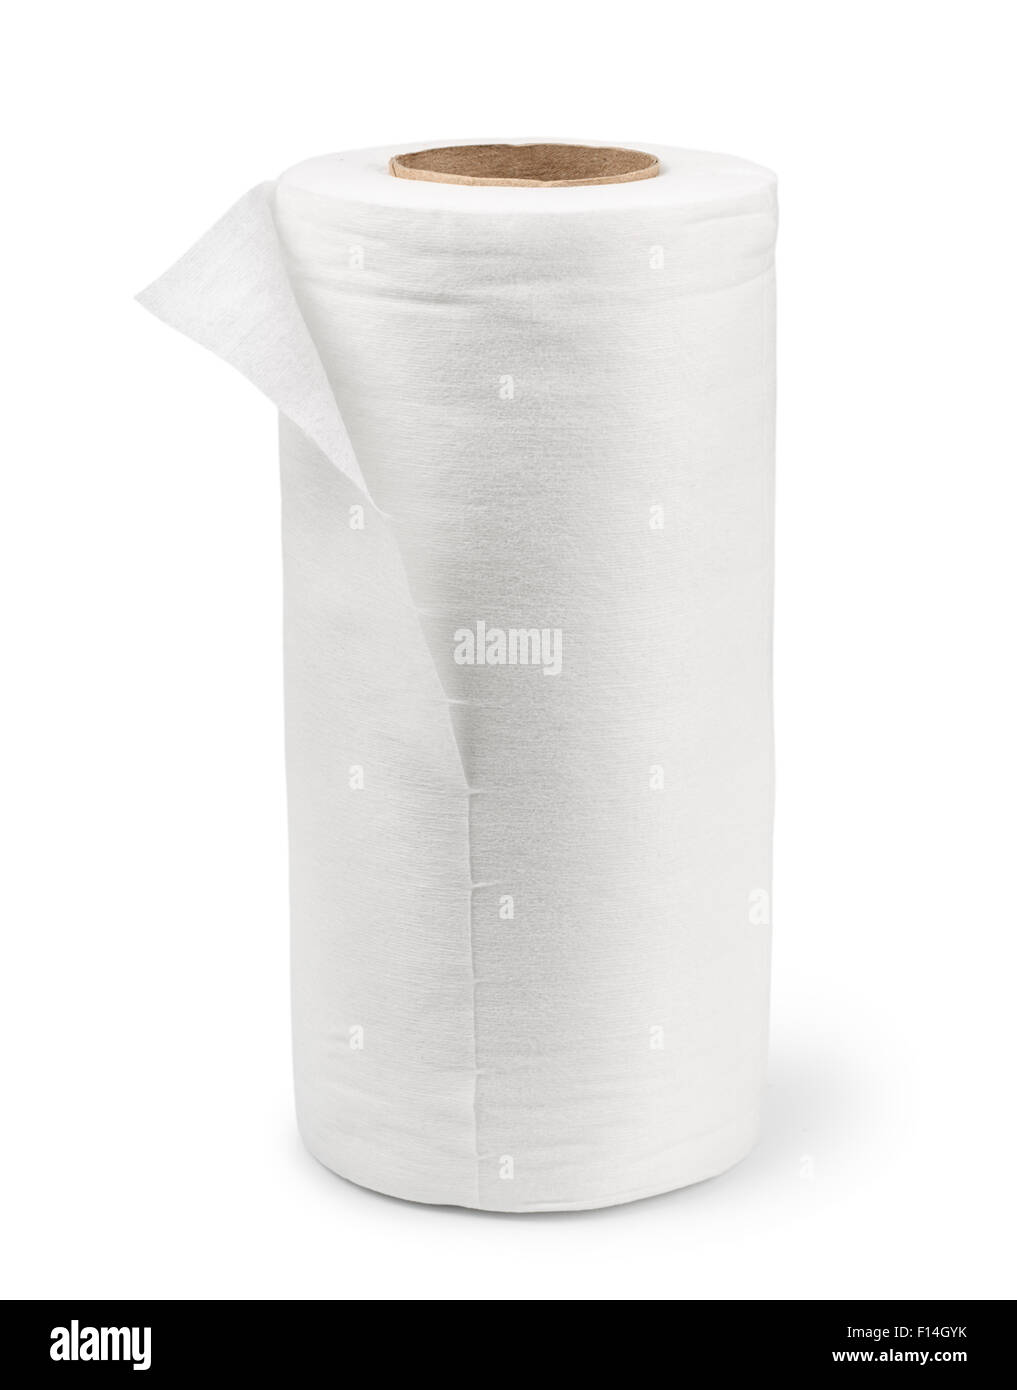 Serviette en tissu laminé blanc isolated on white Banque D'Images